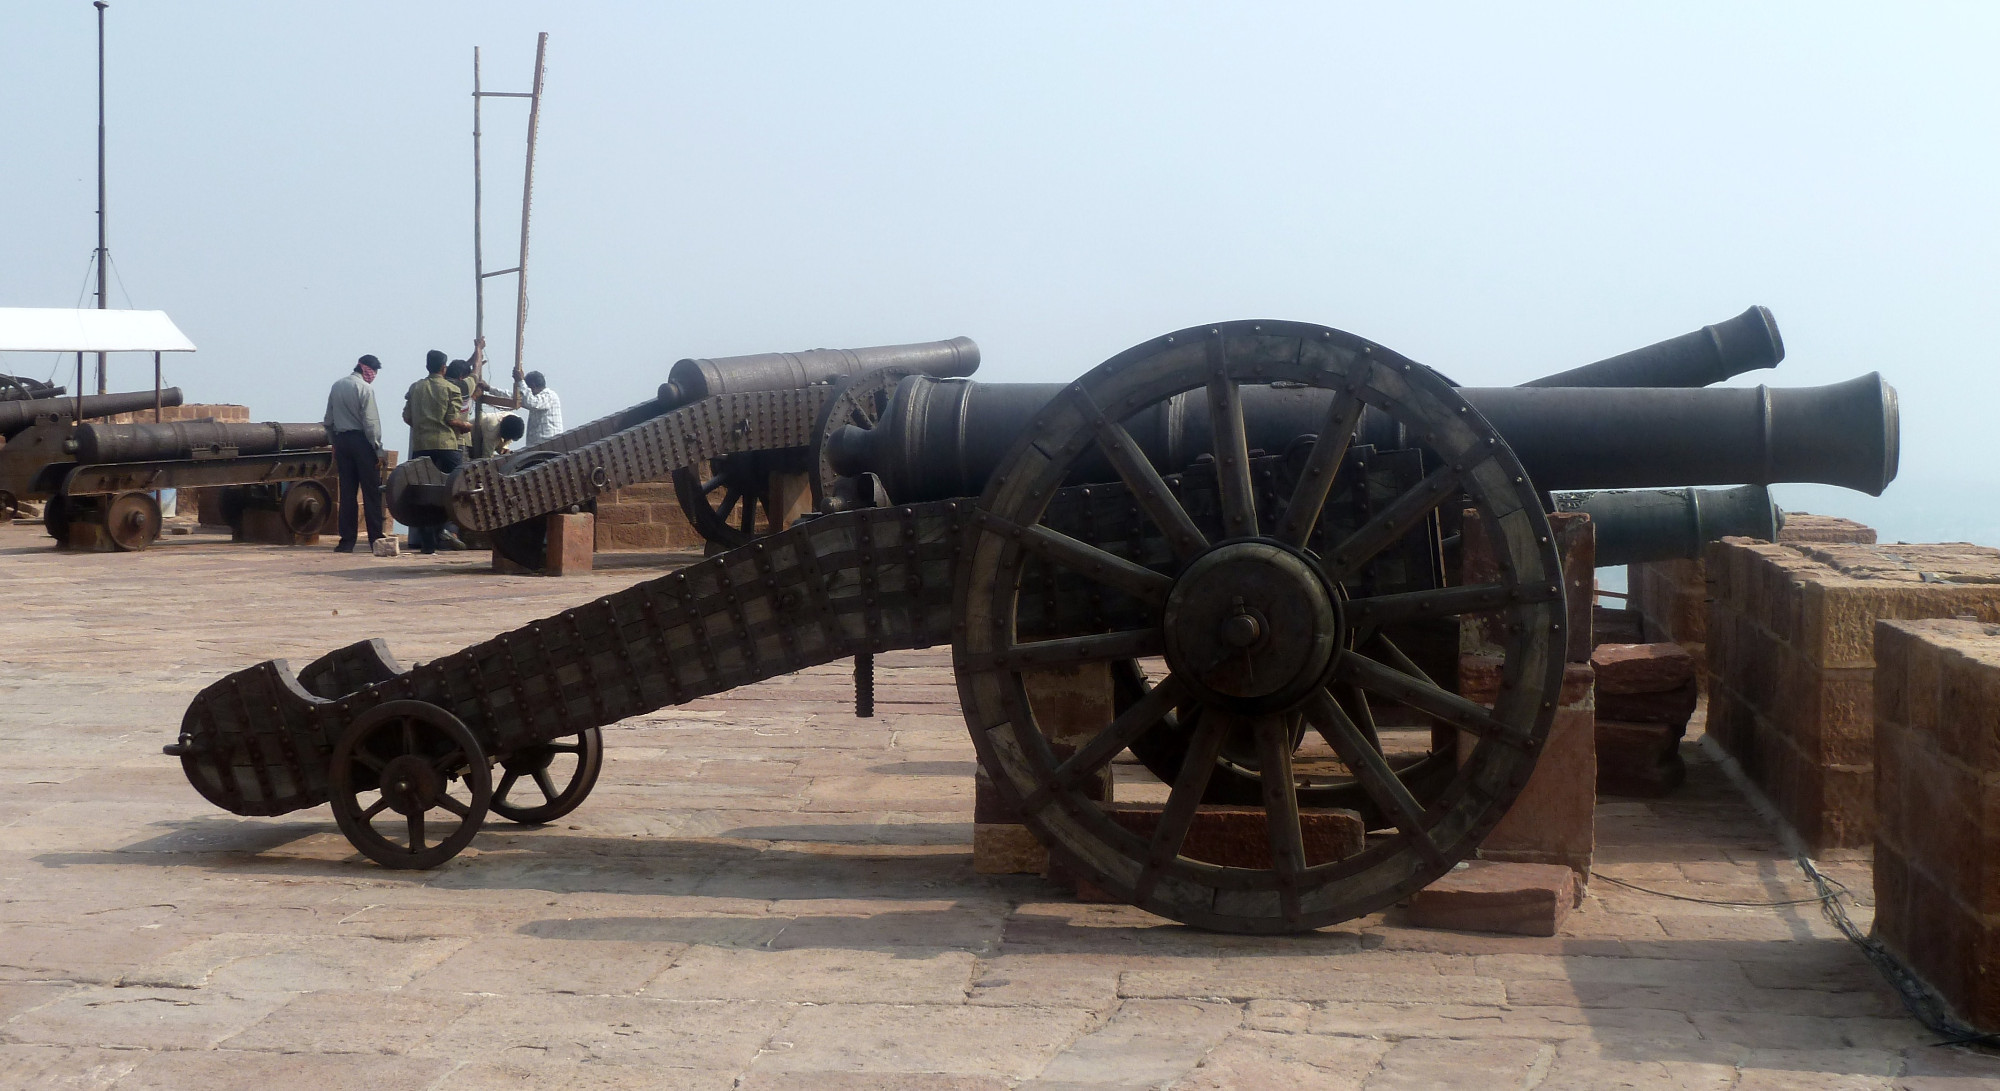 Cannons Battlements